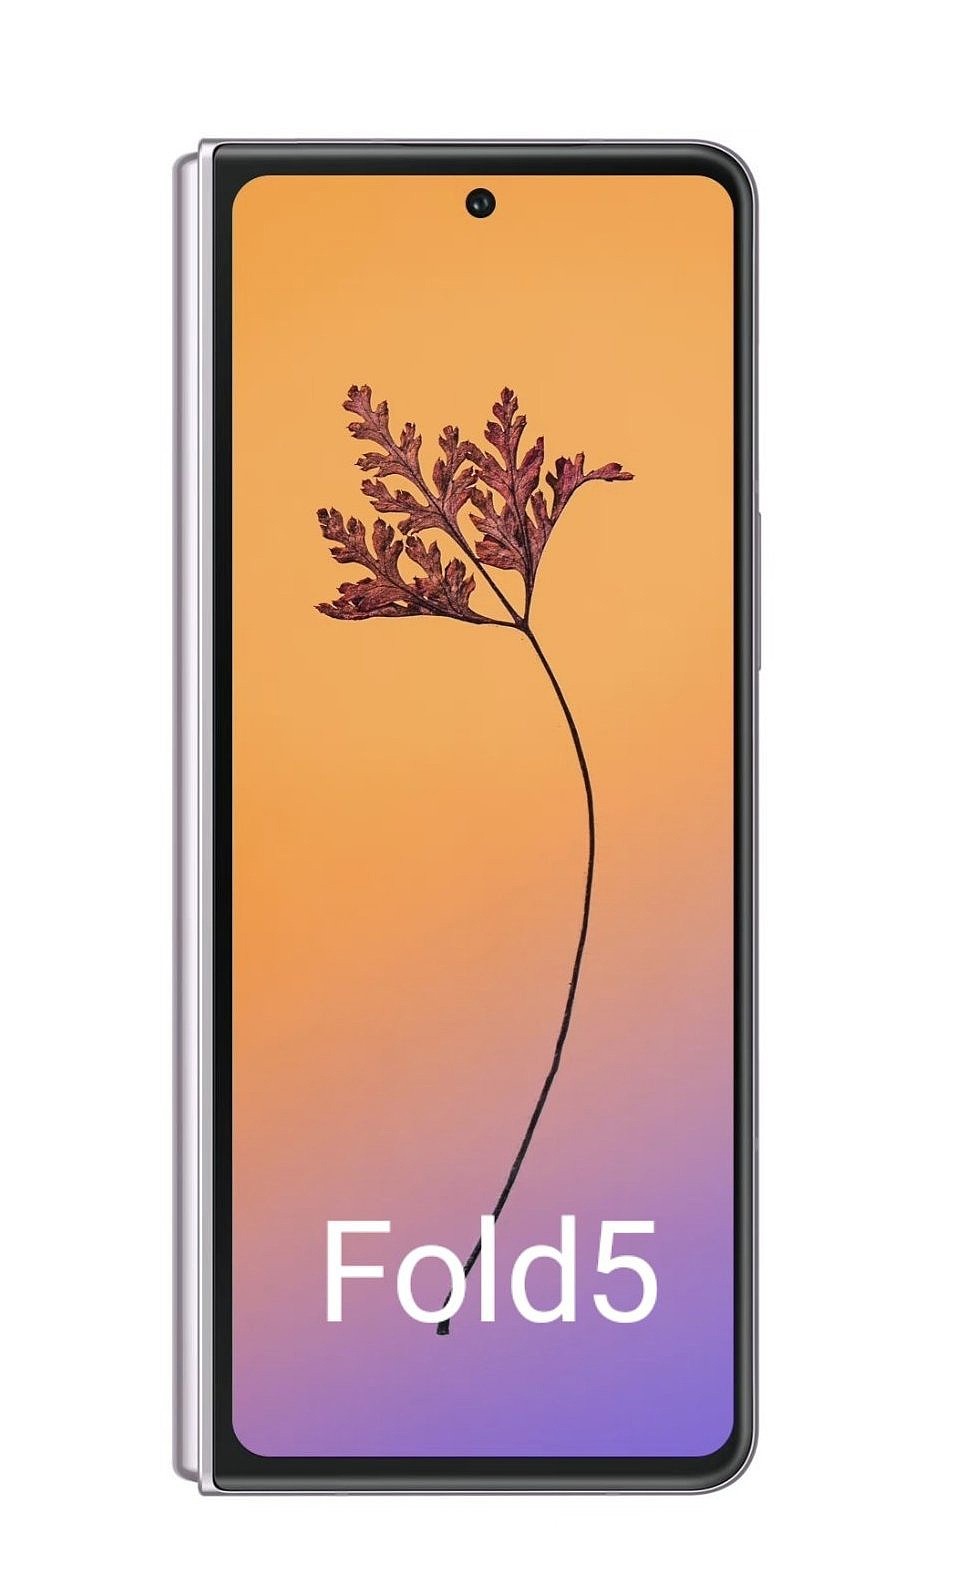 三星 Galaxy Z Fold 5 可折叠手机渲染图曝光 - 2